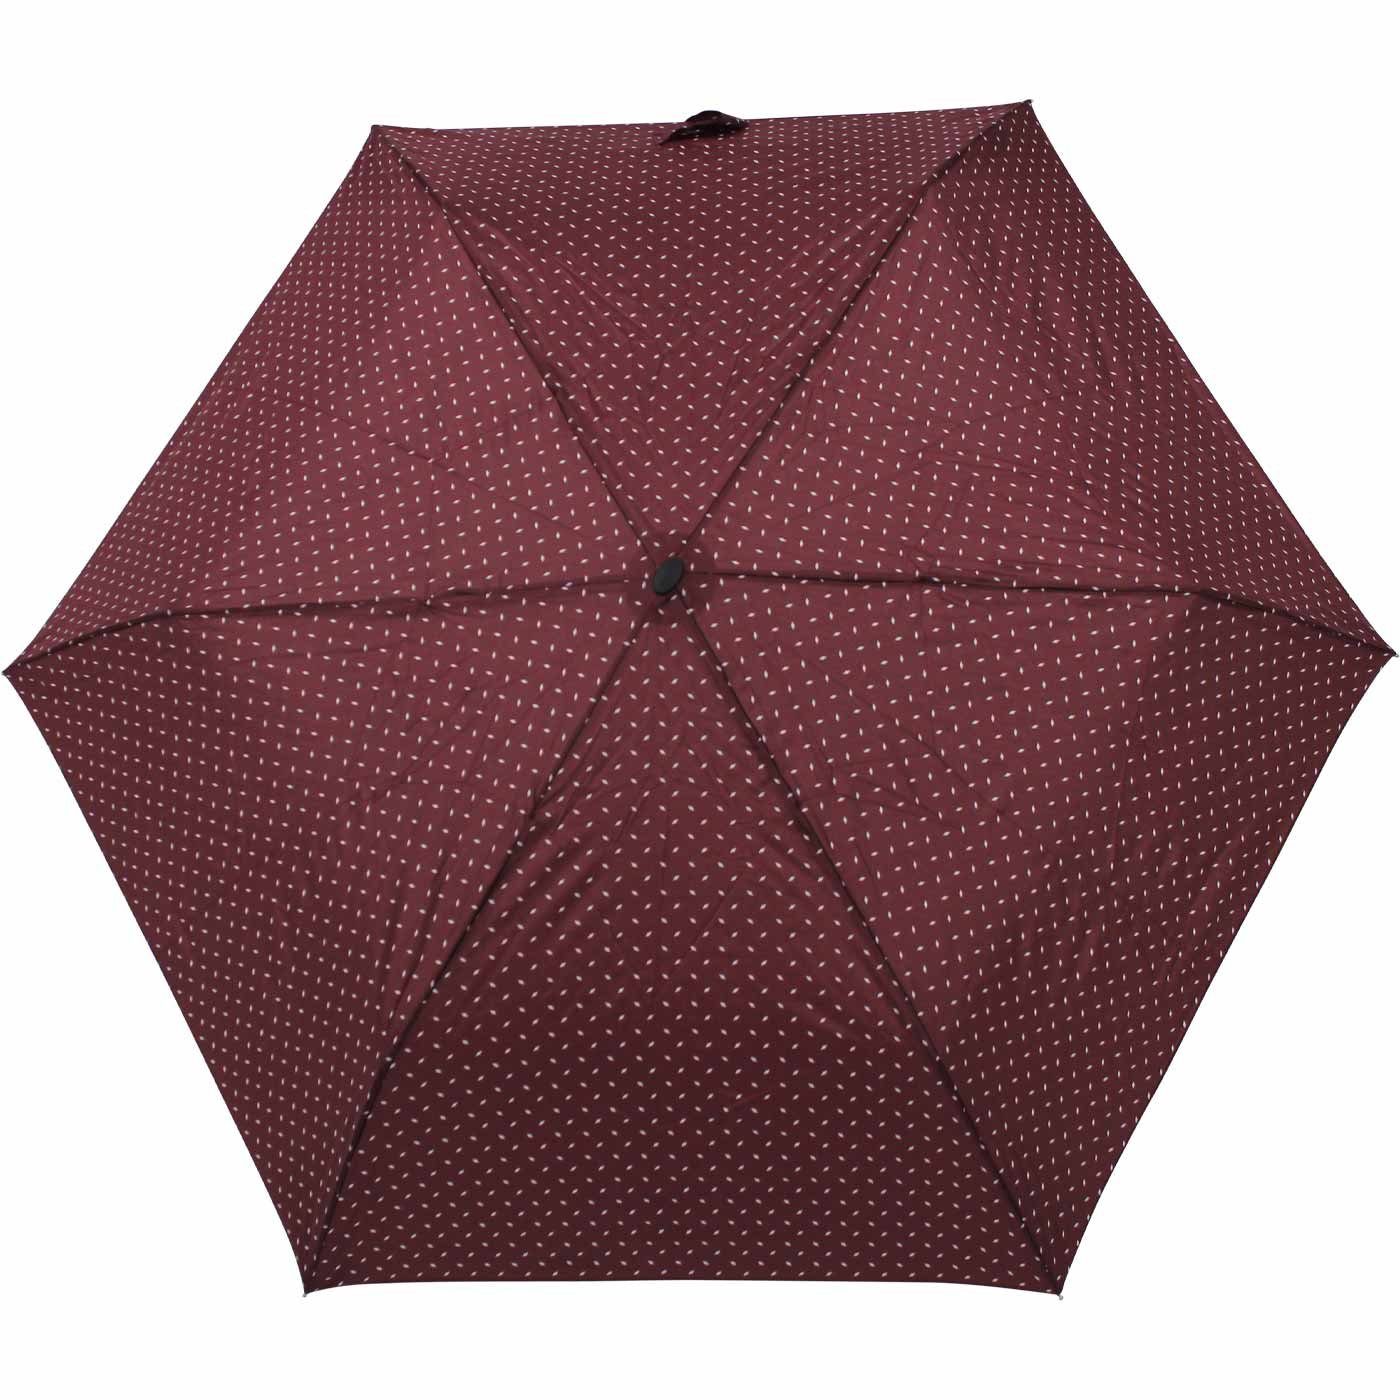 doppler® Taschenregenschirm findet leichter Platz überall und ein jede dieser Begleiter bordeaux für Schirm treue flacher Tasche